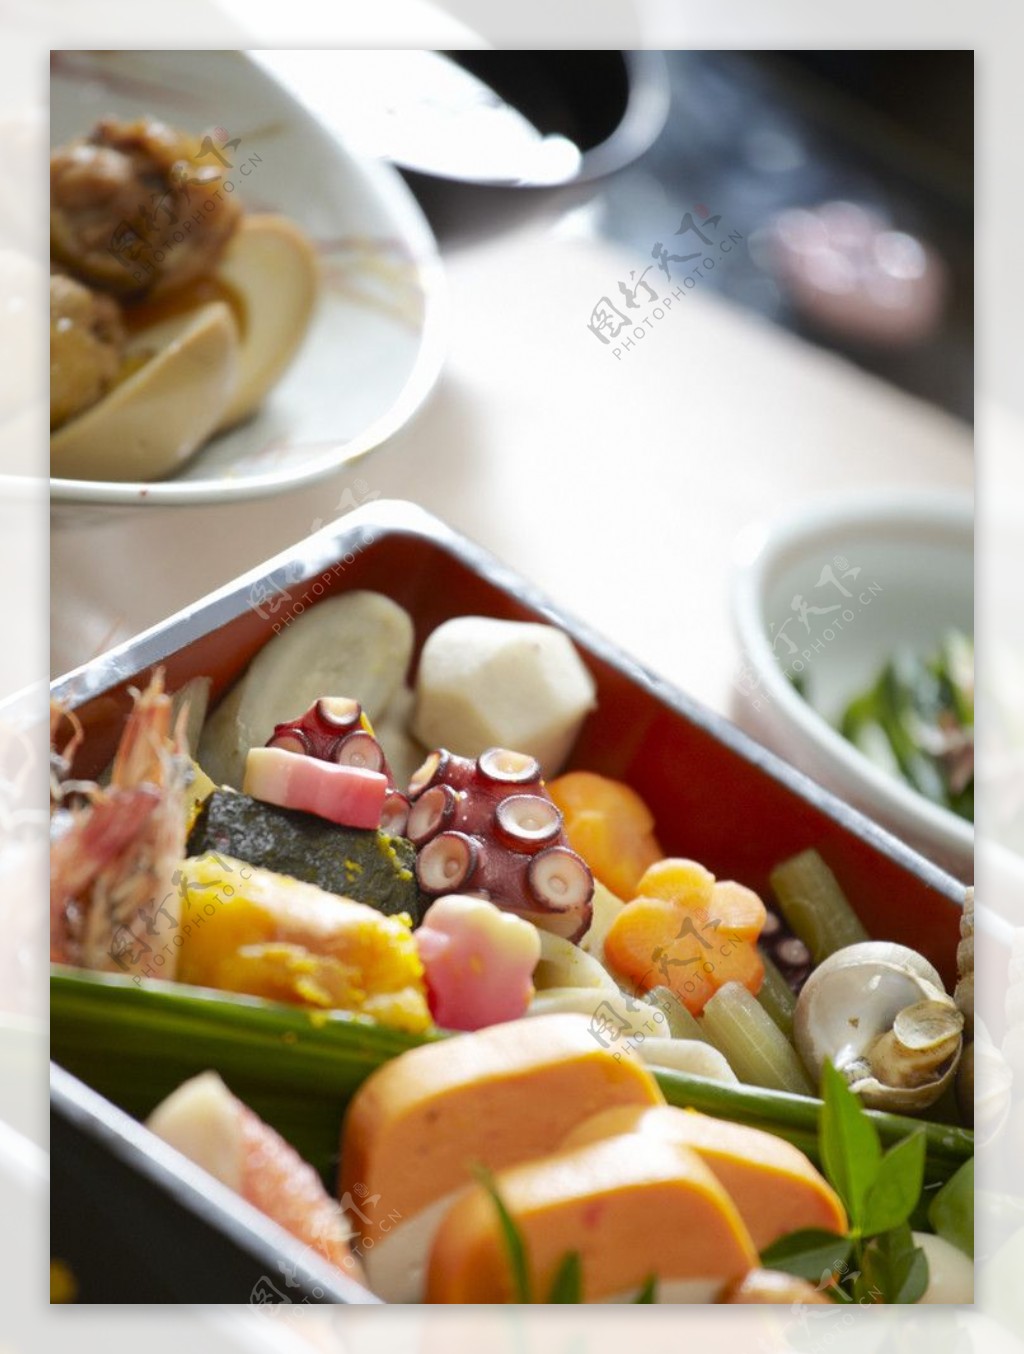 日韩菜式图片